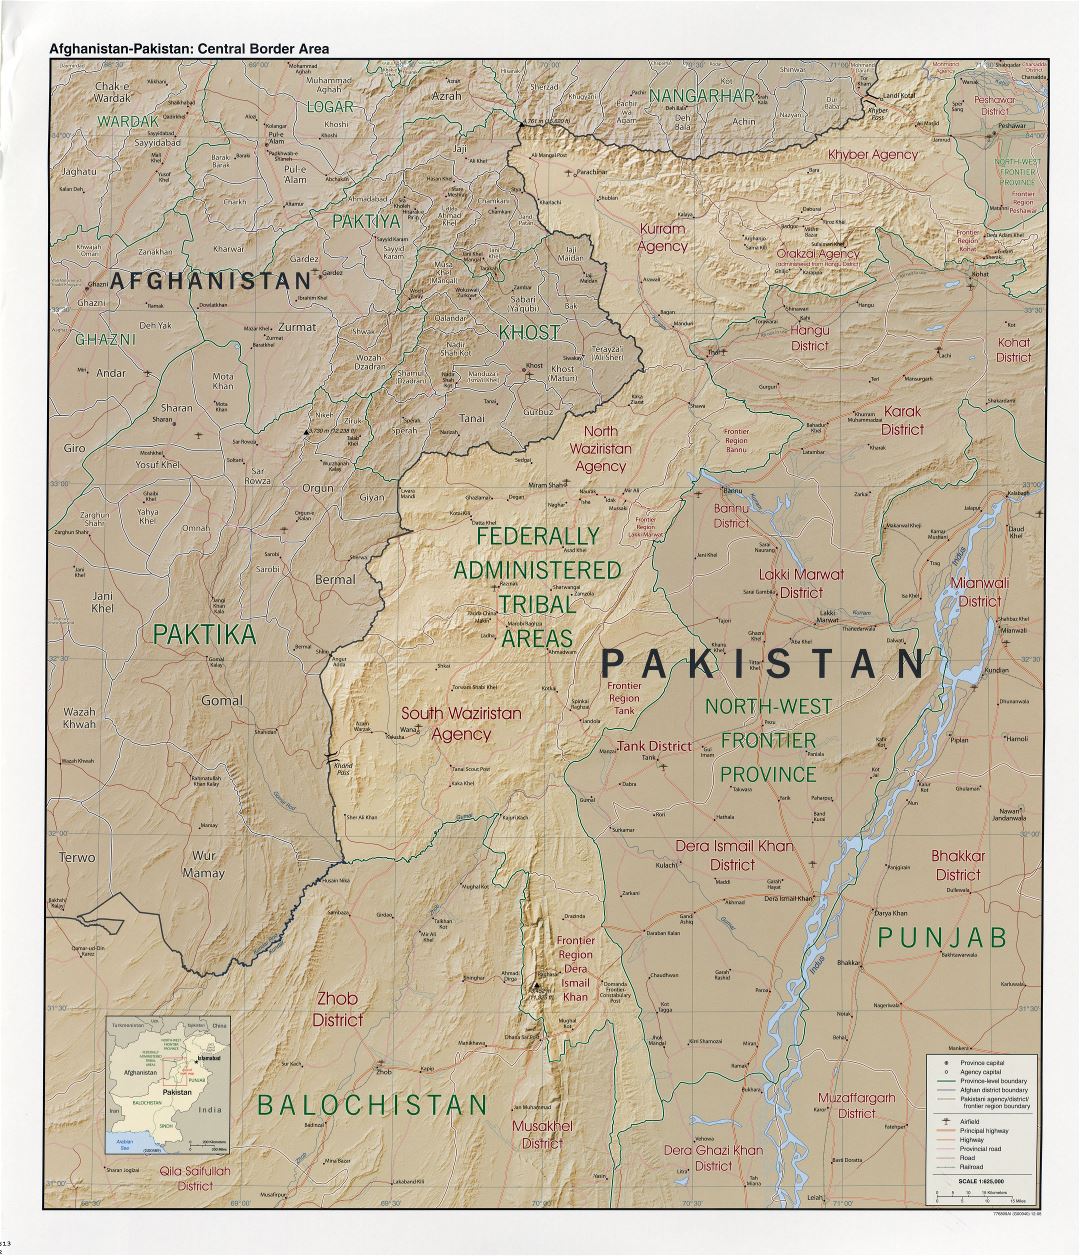 Grande detallado mapa de la zona fronteriza central entre Afganistán y Pakistán con relieve y otras marcas - 2008